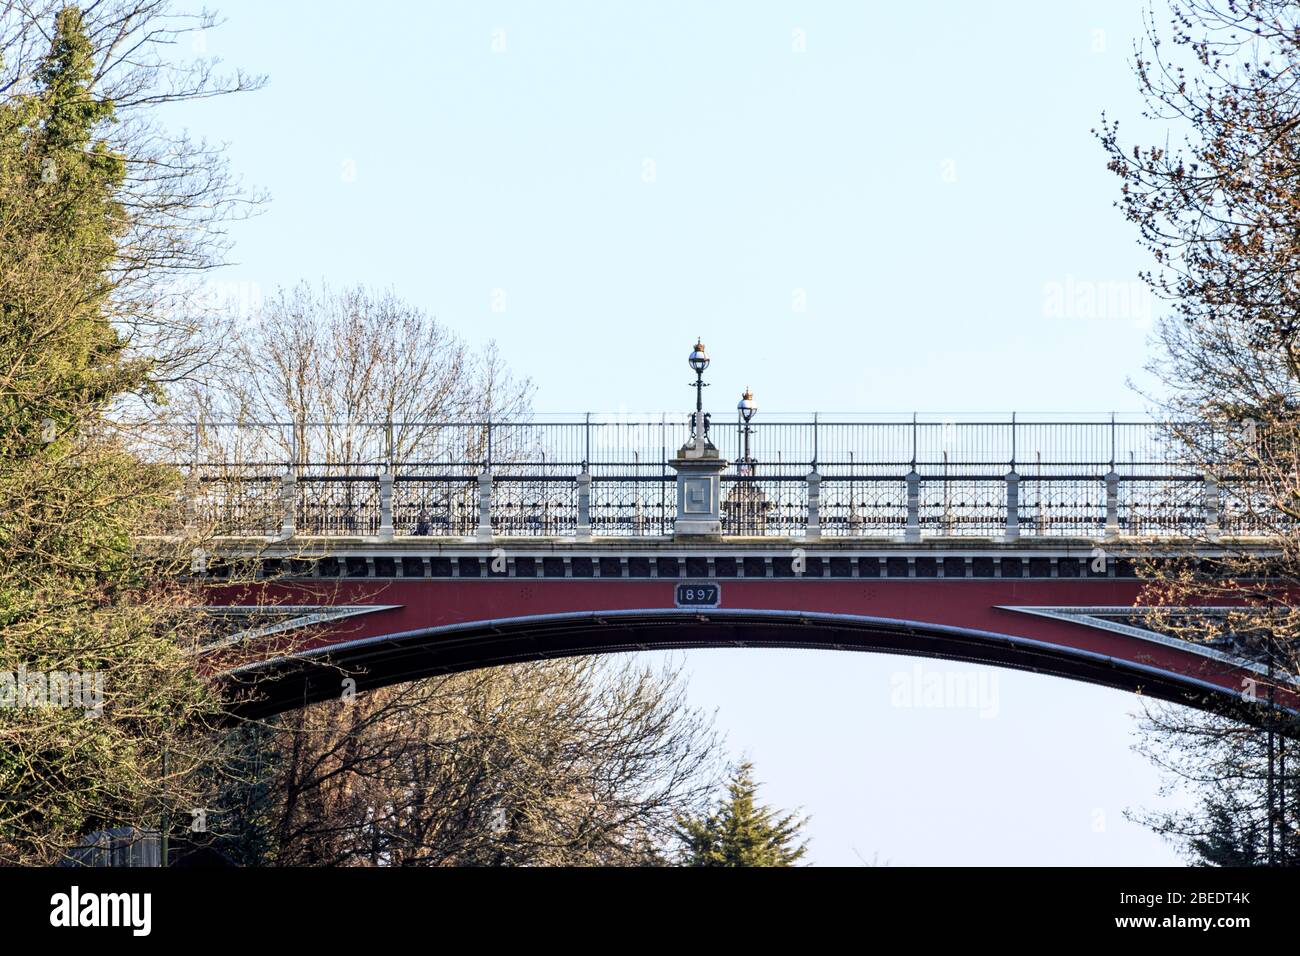 Le pont de l'archway, souvent connu sous le nom de « pont des suicicides », transportant Hornsey Lane sur Archway Road, Londres, Royaume-Uni, avec les nouvelles rampes de prévention du suicide Banque D'Images